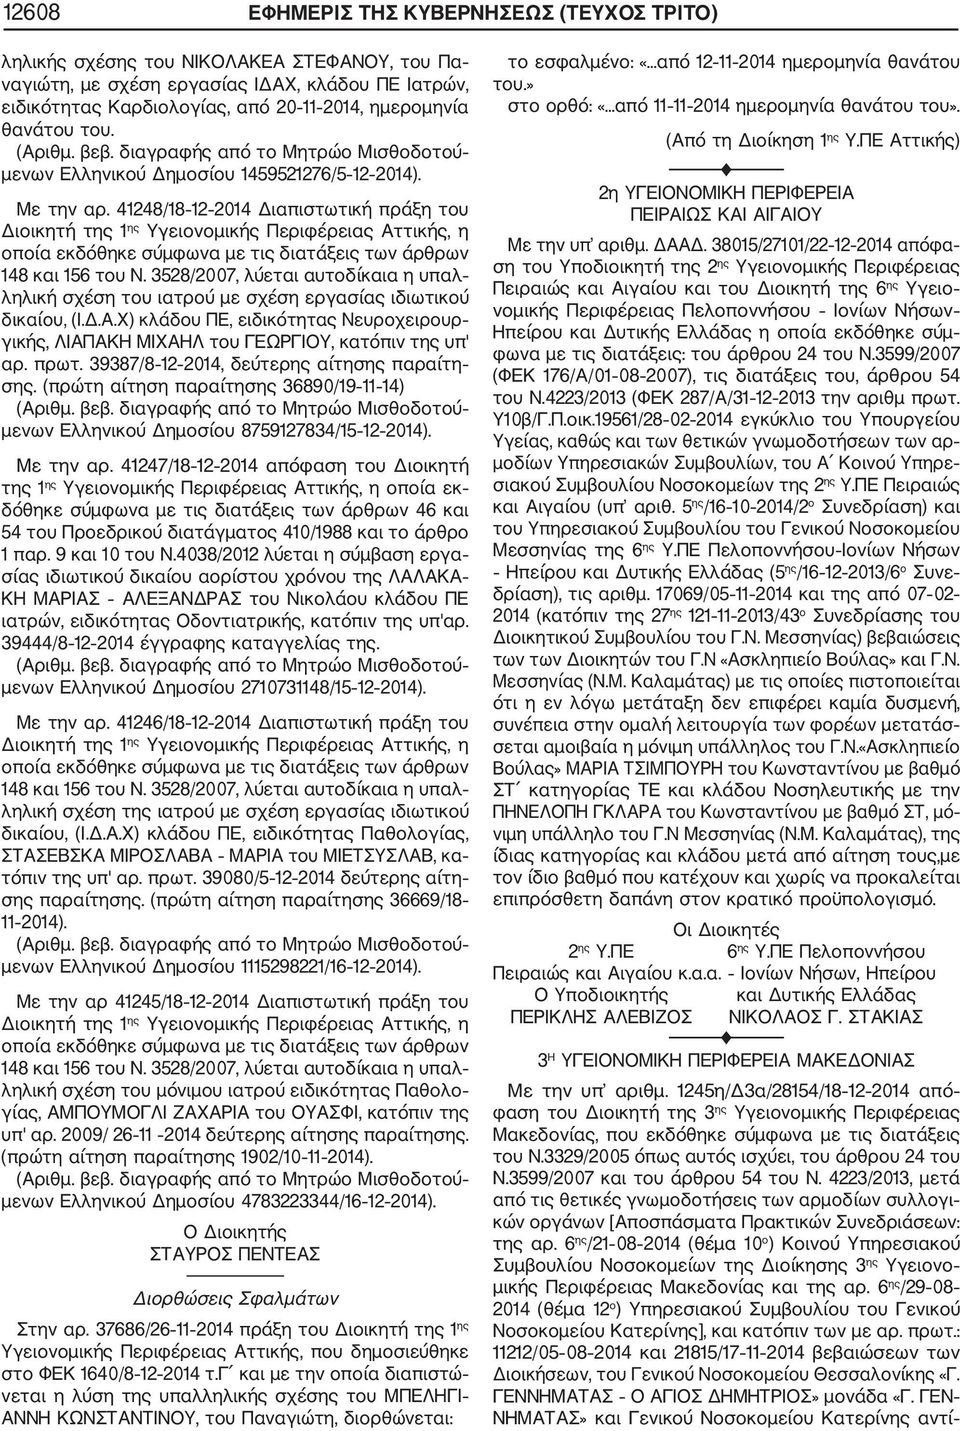 41248/18 12 2014 Διαπιστωτική πράξη του Διοικητή της 1 ης Υγειονομικής Περιφέρειας Αττικής, η οποία εκδόθηκε σύμφωνα με τις διατάξεις των άρθρων 148 και 156 του Ν.